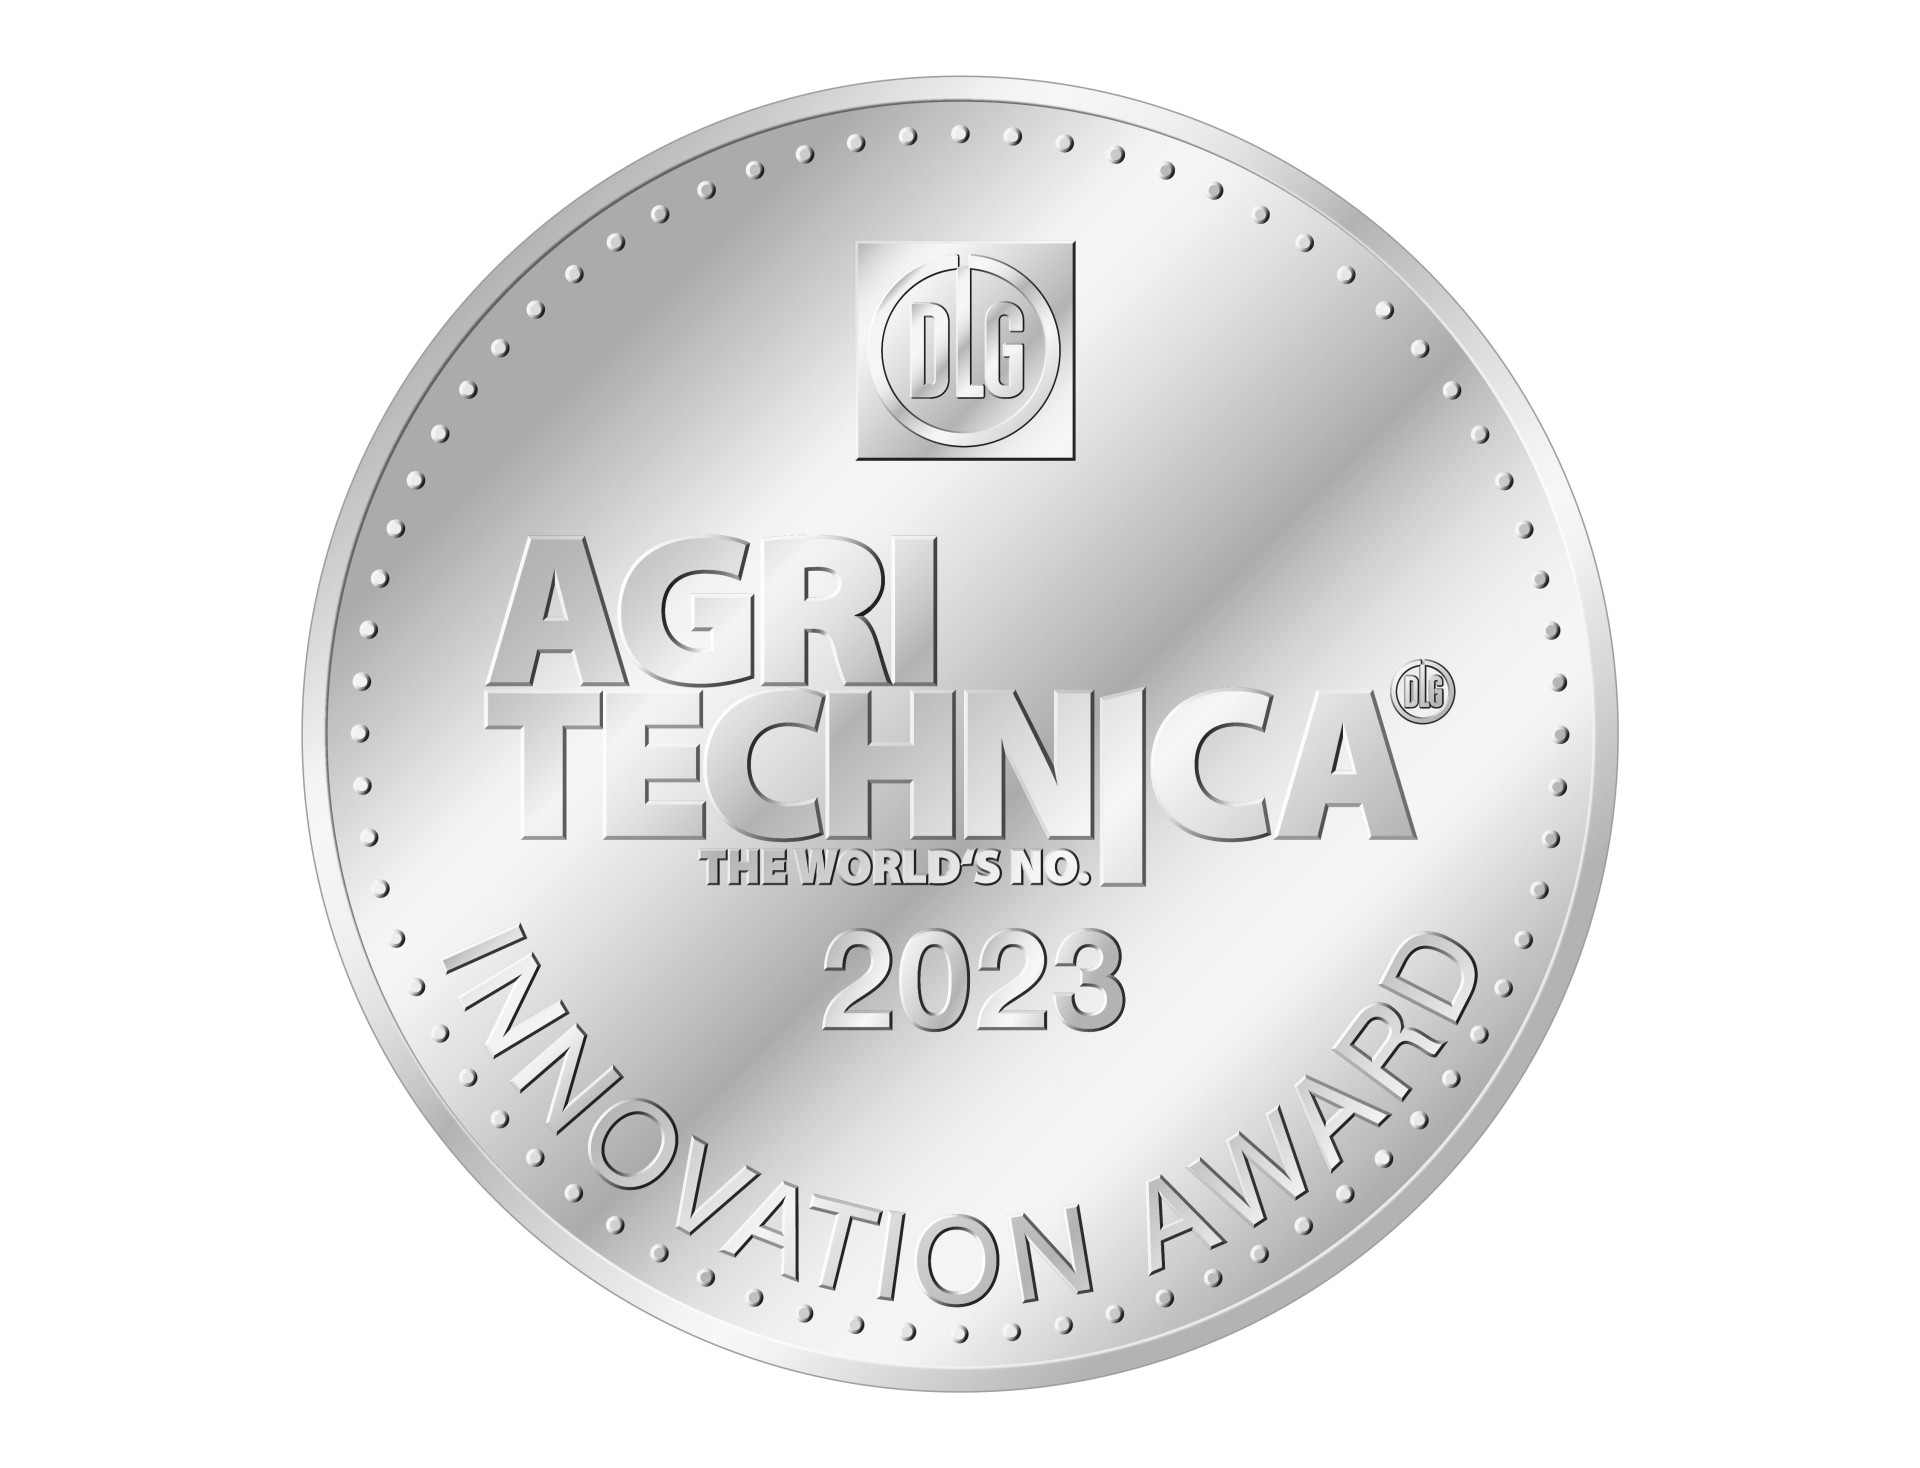 New Holland gana la medalla de oro en Agritechnica 2023 por el nuevo concepto de cosechadora y dos medallas de plata por los tractores T7 Methane Power LNG y T4 Electric Power